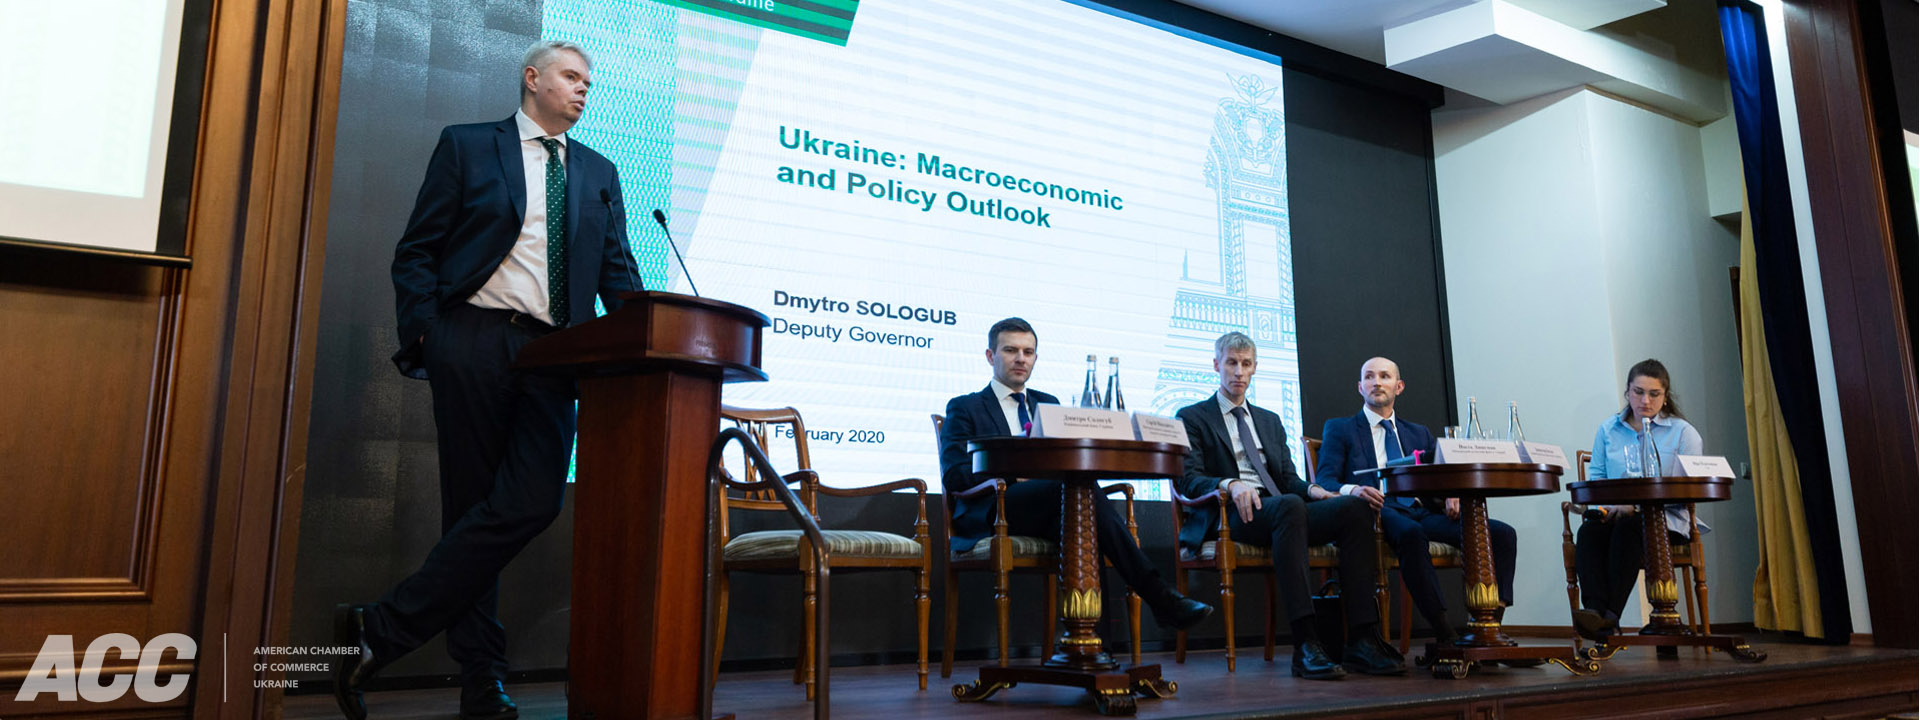 Панельна дискусія «Макроекономічний огляд та прогноз для України»